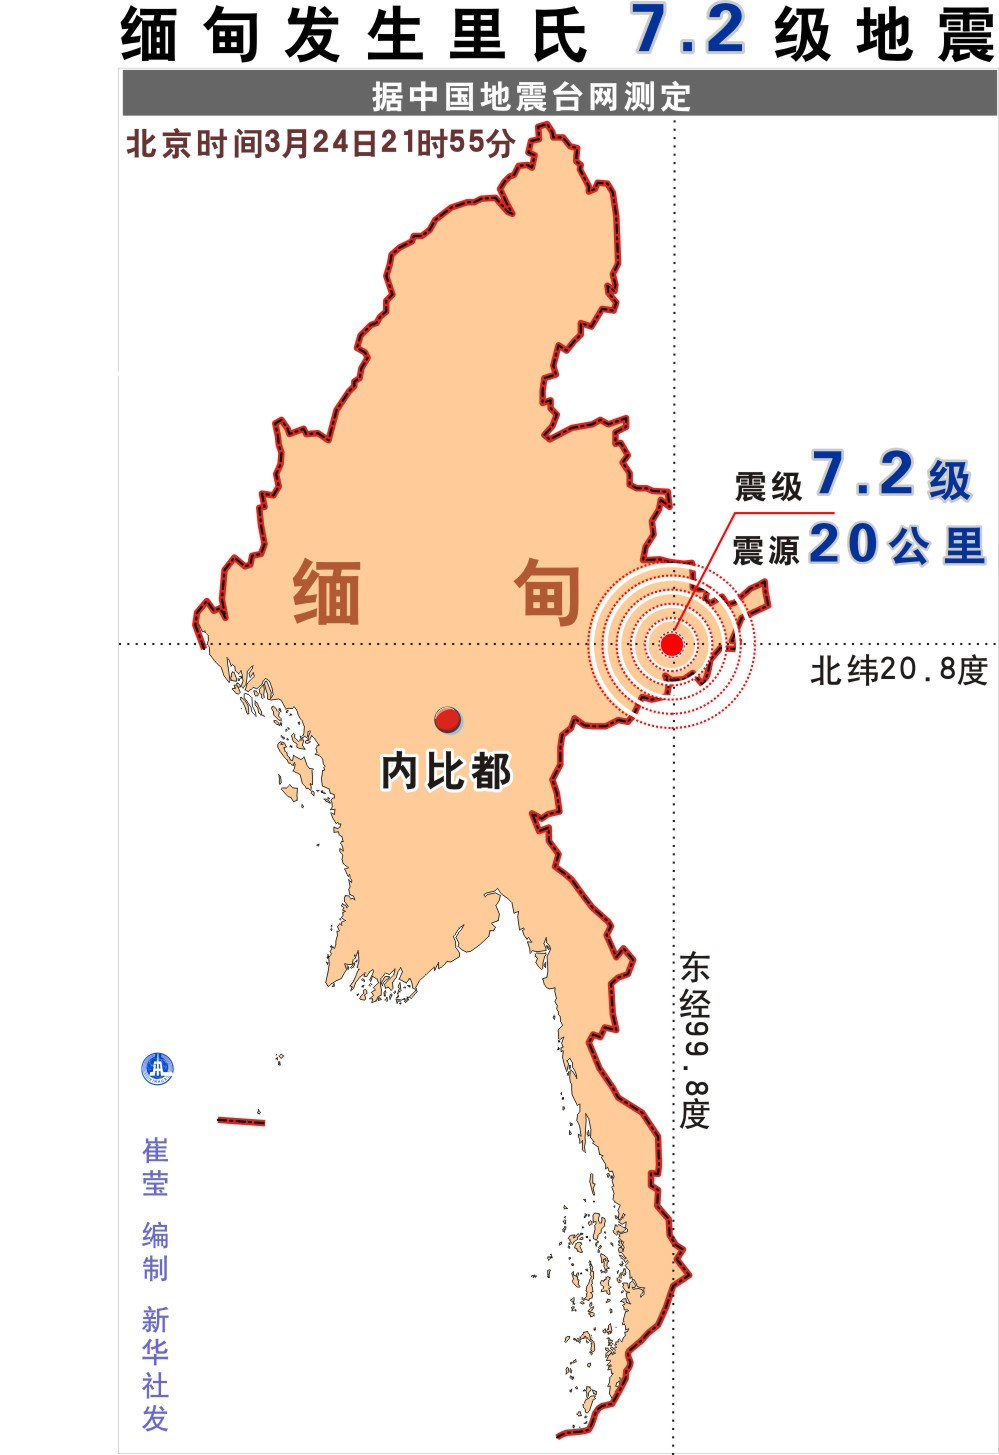 高清:缅甸发生里氏7.2级地震图表